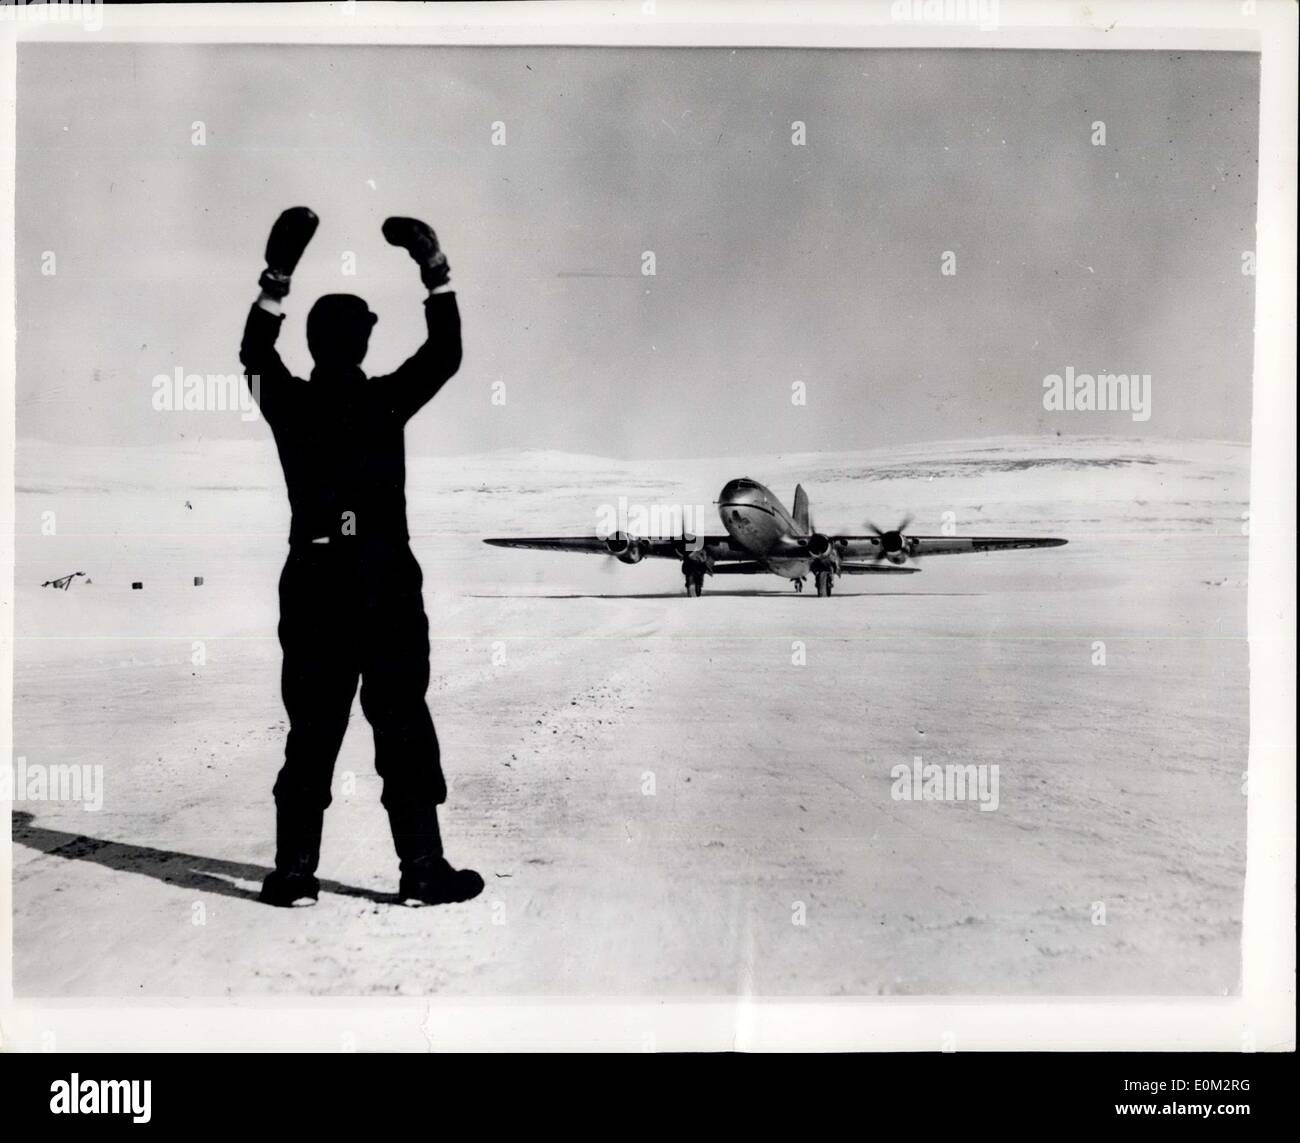 11. Mai 1953 - fliegen über dem Nordpol: Zwei Hastings Flugzeuge der Royal Air Force fliegt College in Manby, Linos., haben gerade mit diesen Fotografien von einem Air Ministry-Fotografen auf Flügen über und in der Nähe des Nordpols. Jedes Flugzeug kreiste die geographischen Pole auf zwei 11-Stunden-Flügen von der Royal Canadian Air Force Basis in Resolute Bay, die innerhalb des Polarkreises liegt (Position: 74 ° c 50 Minuten nördlich, 95 Grad West) die Flüge, die beteiligt sind 10.115 Meilen fliegen, gab praktische Ausbildung in der Höhen-Navigation über strukturlose Flächen, wo magnetische Stockfoto